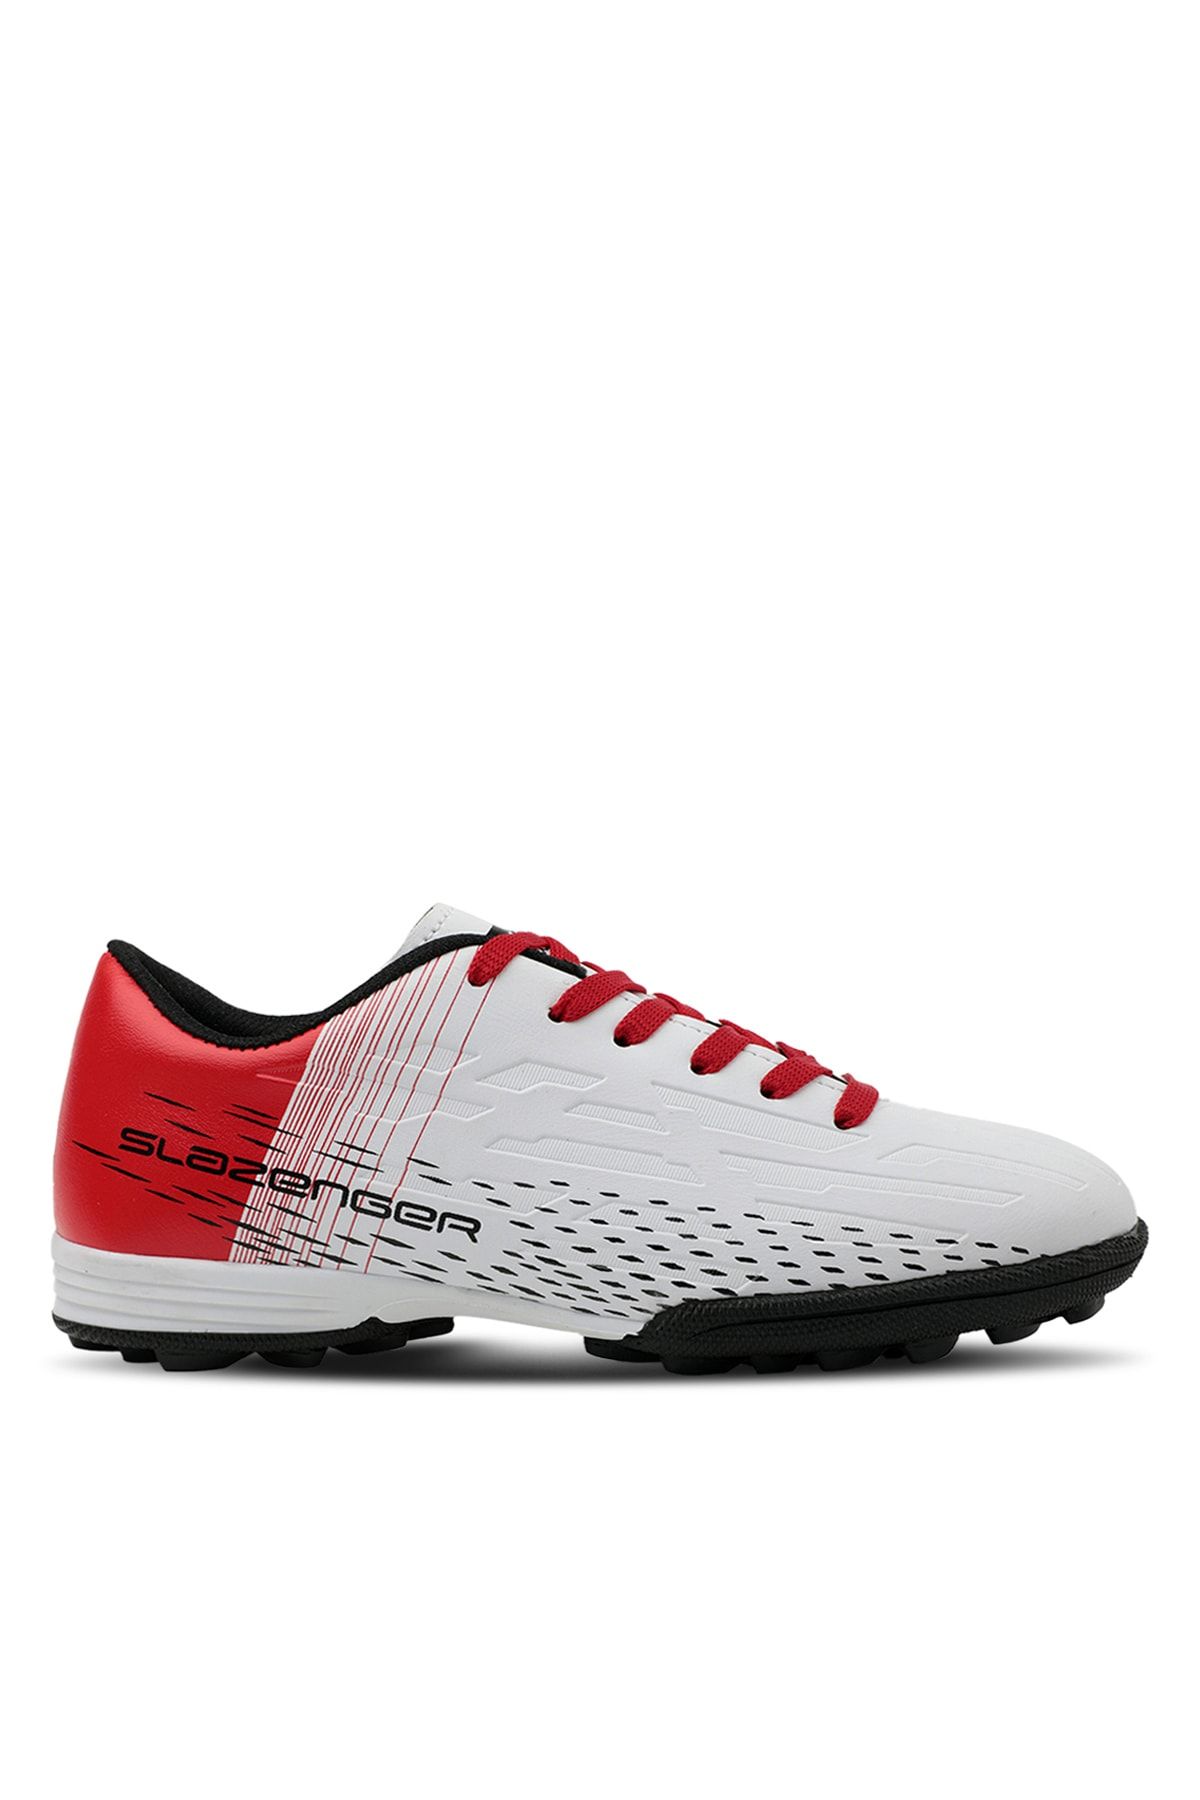 Slazenger Score Hs Futbol Erkek Halı Saha Ayakkabı Beyaz / Kırmızı